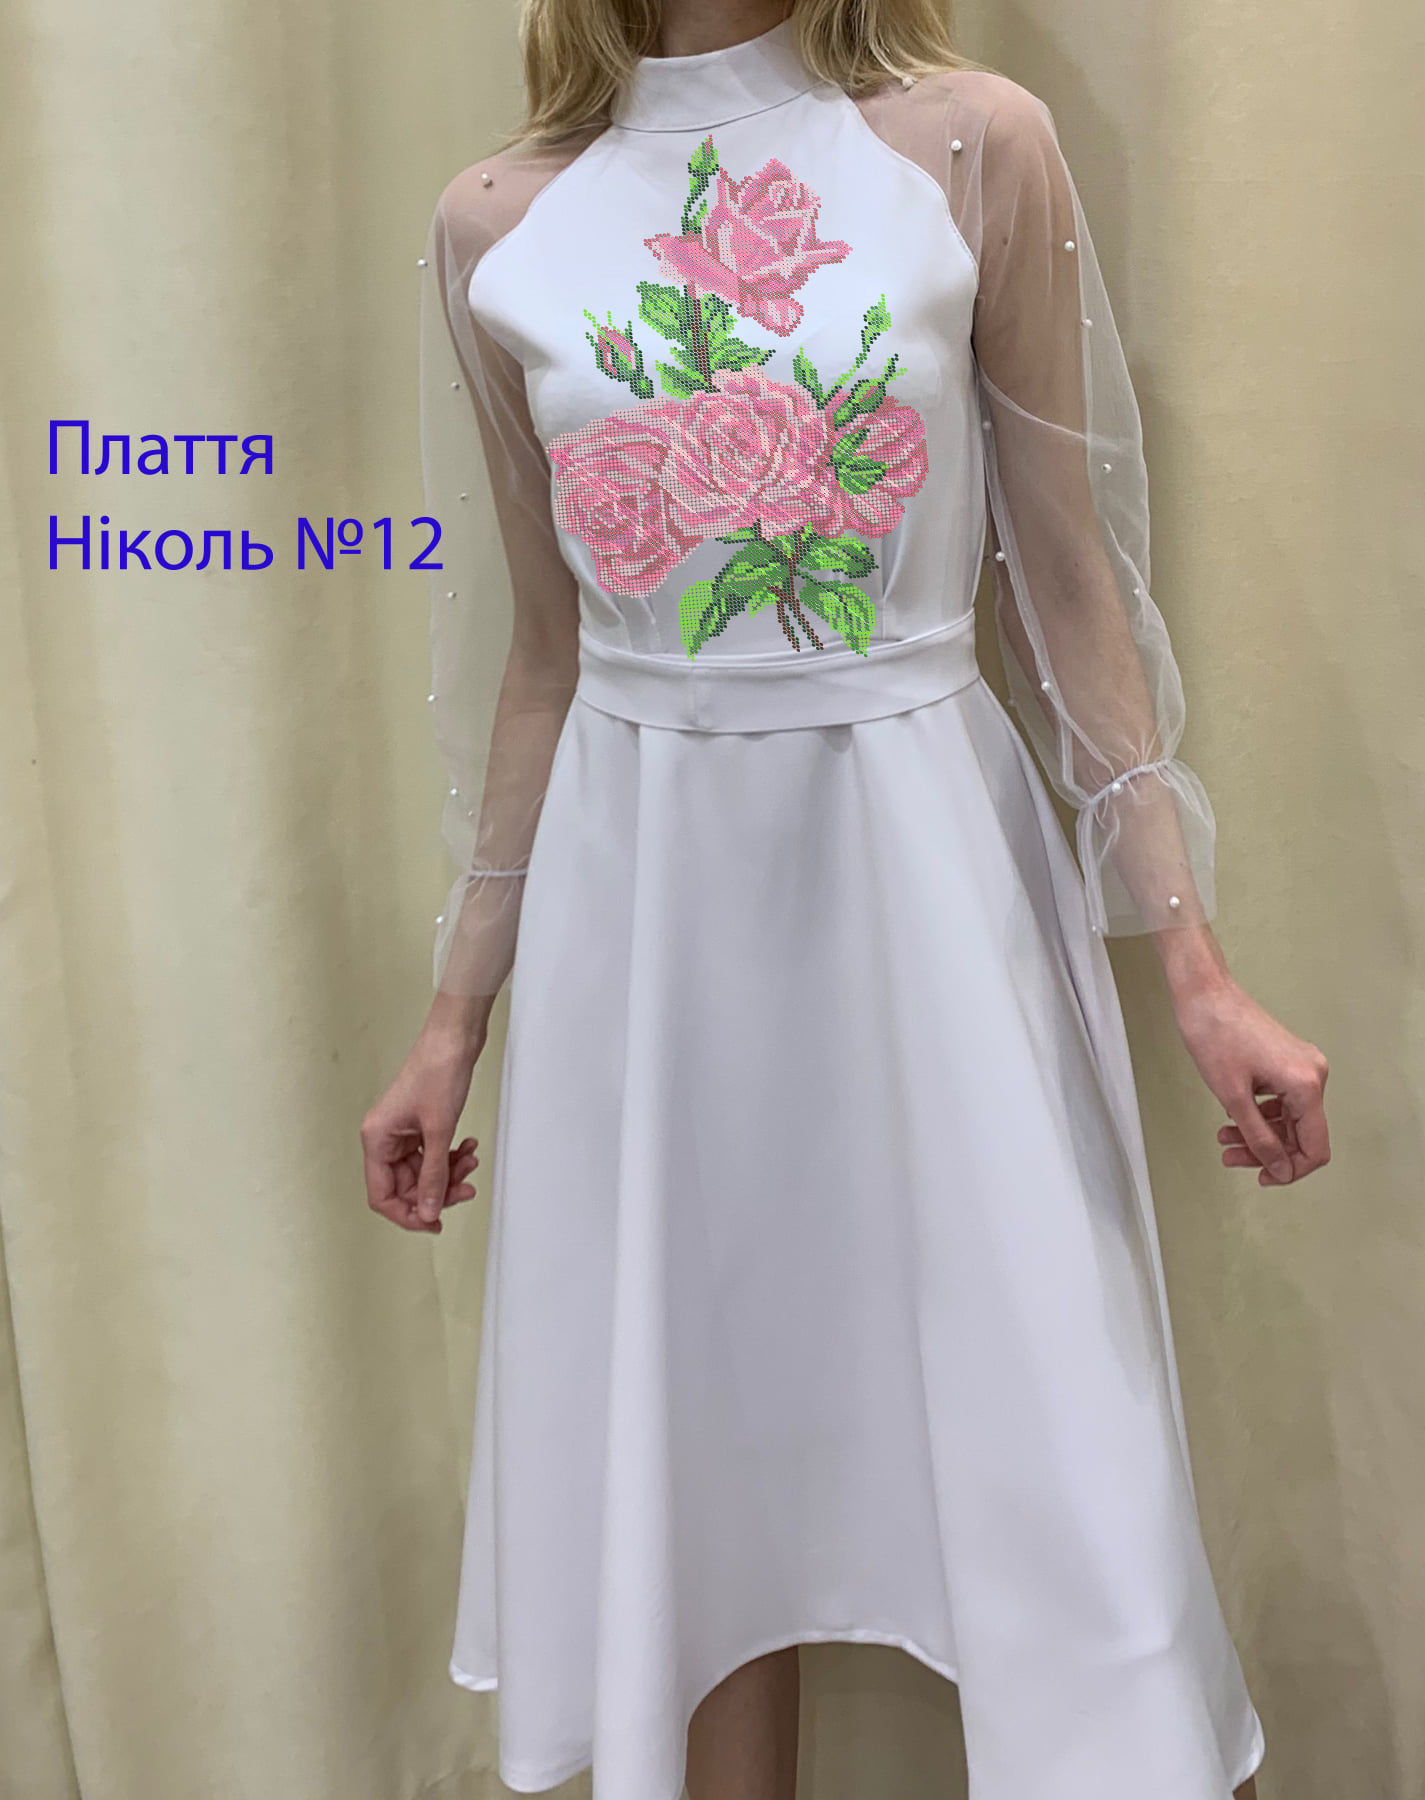 Пошита жіноча сукня для вишивки Ніколь №12